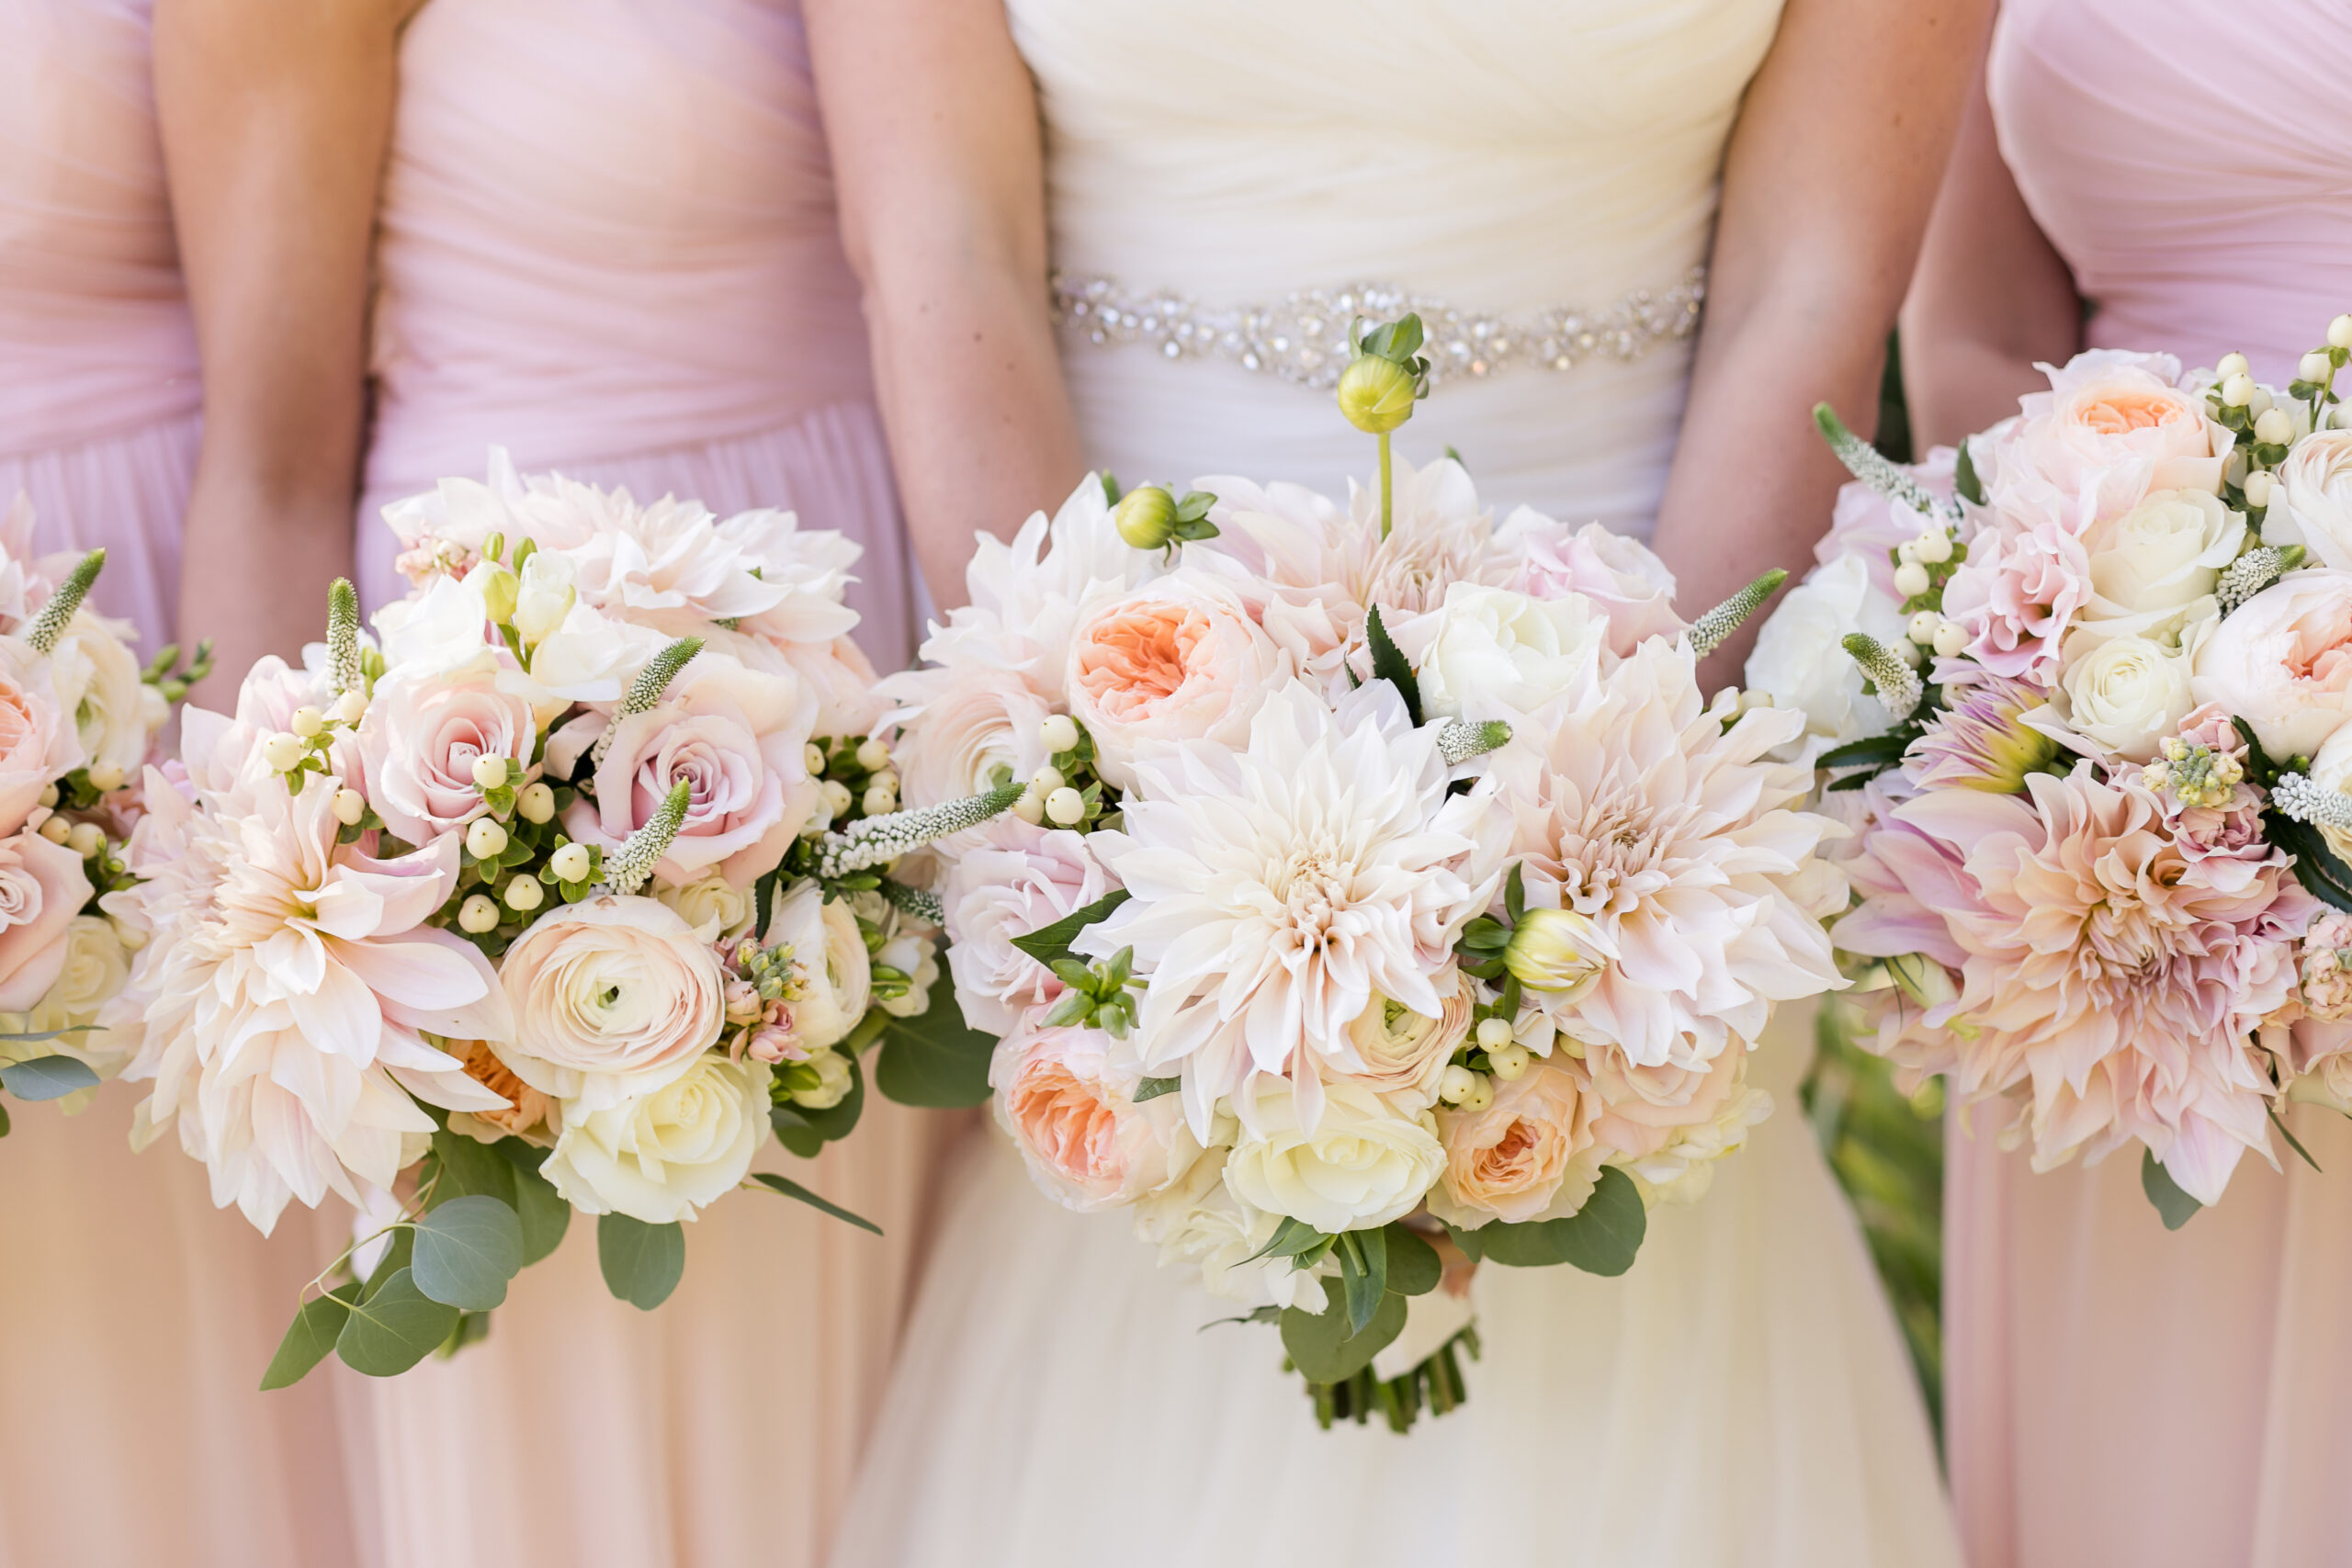 white, pink, cream wedding bouquet ideas